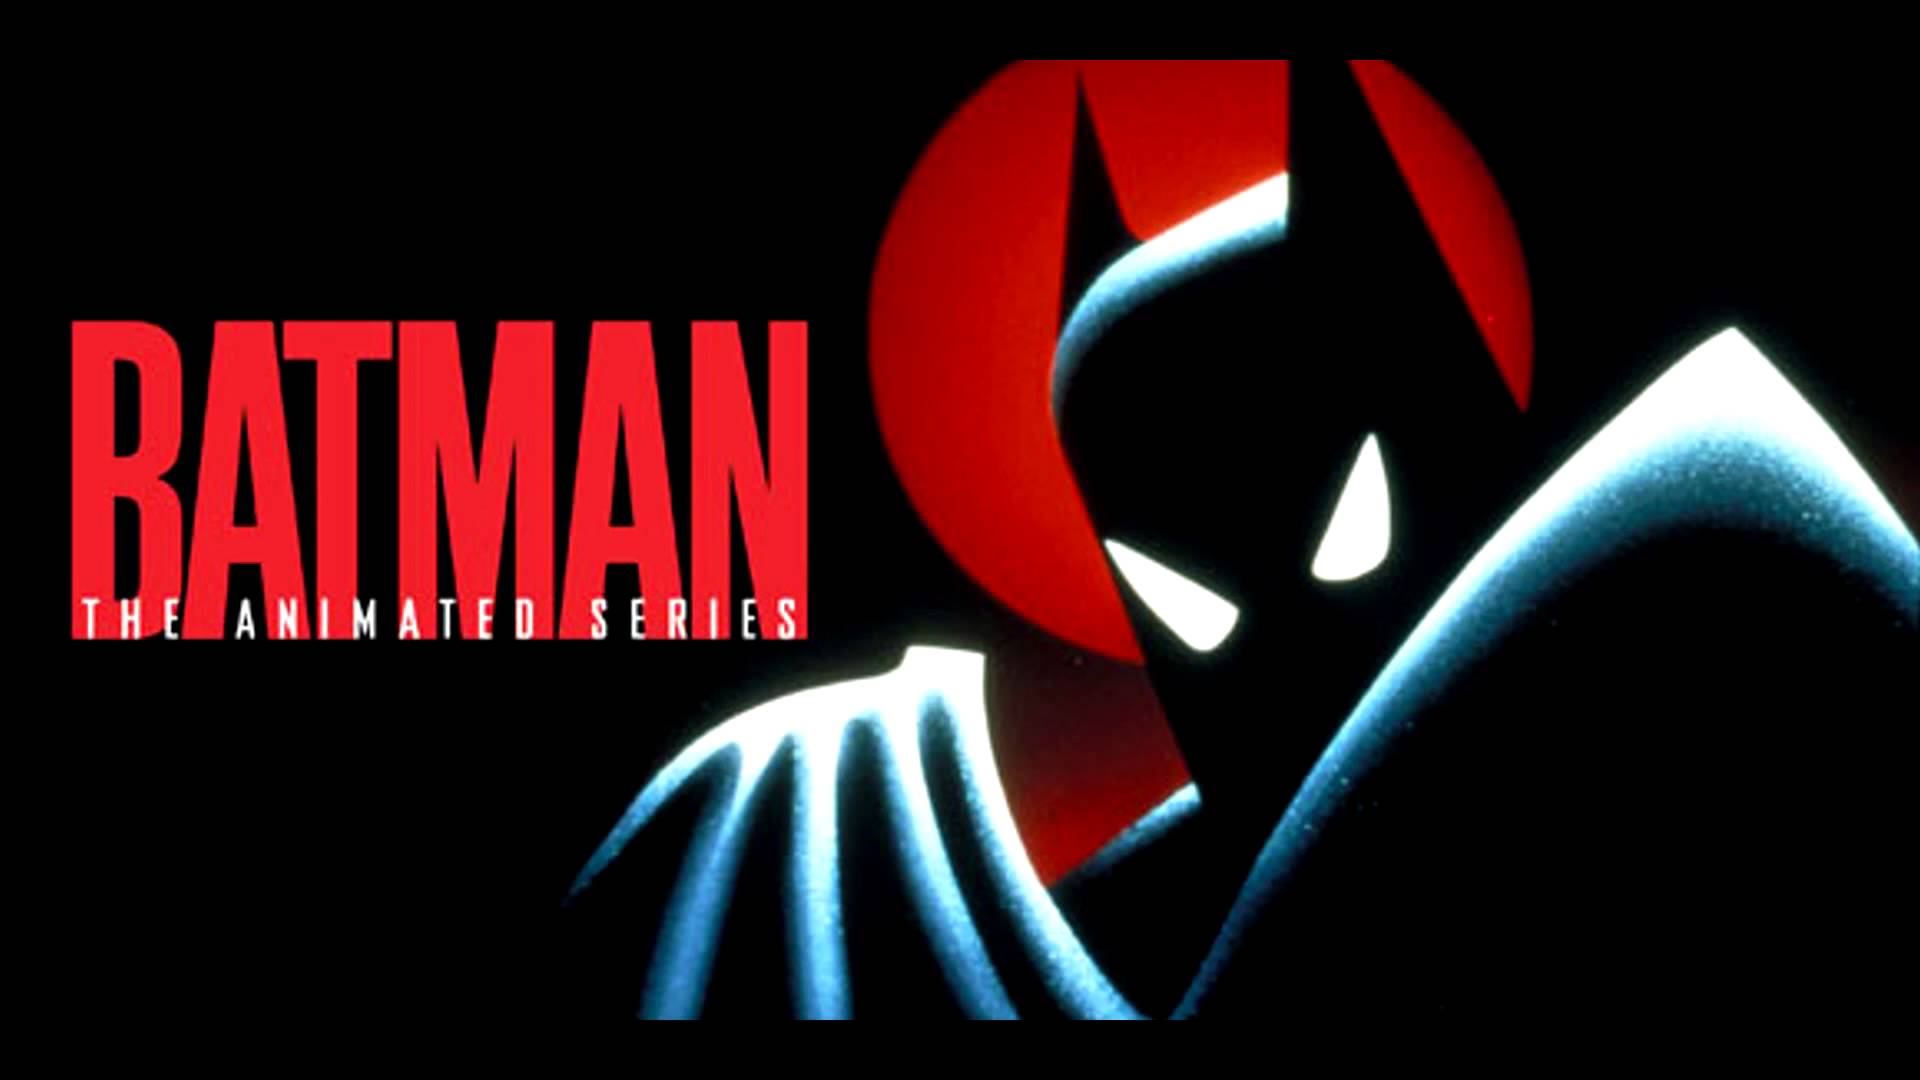 Batman la serie animada en Blu-ray características especiales anunciadas -  Locos x los Juegos